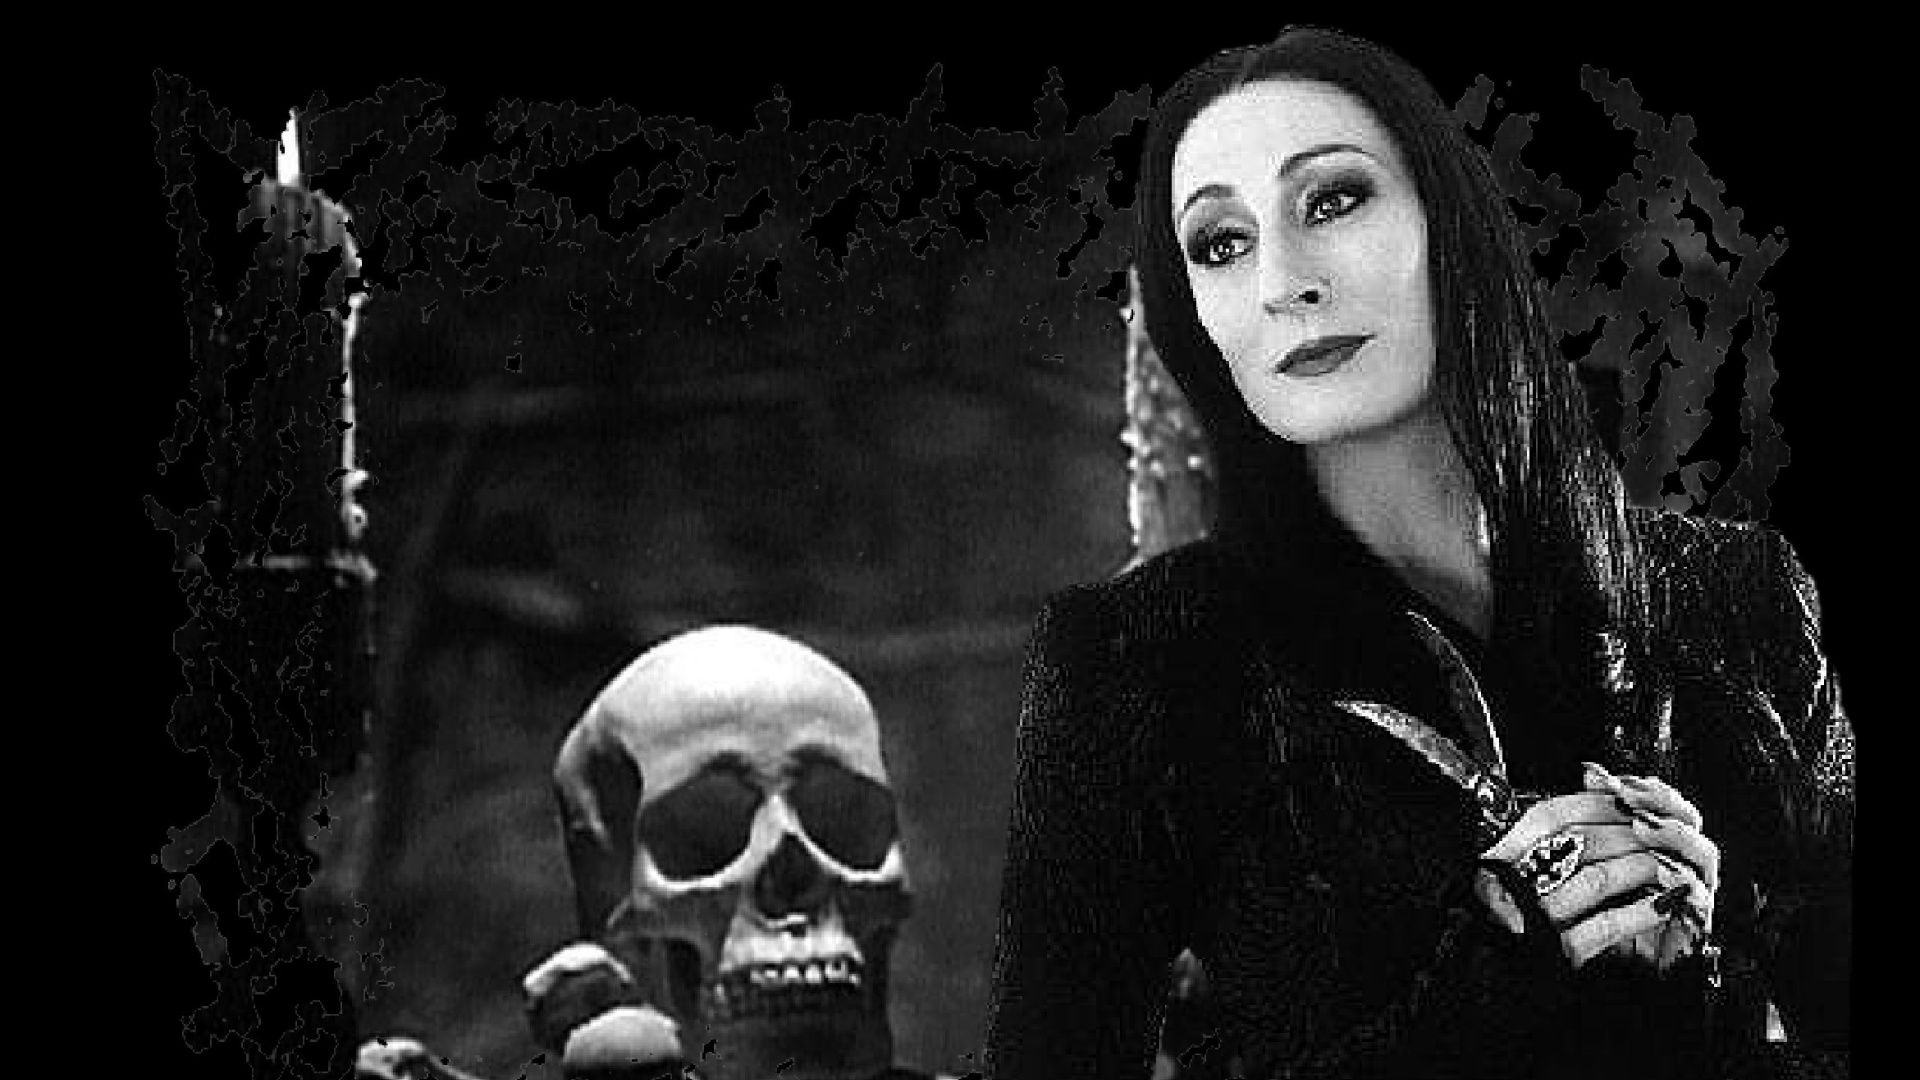 L’avete riconosciuta? Era la famosa Morticia della famiglia Addams, oggi ha 69 anni ed è stata al centro di uno scandalo